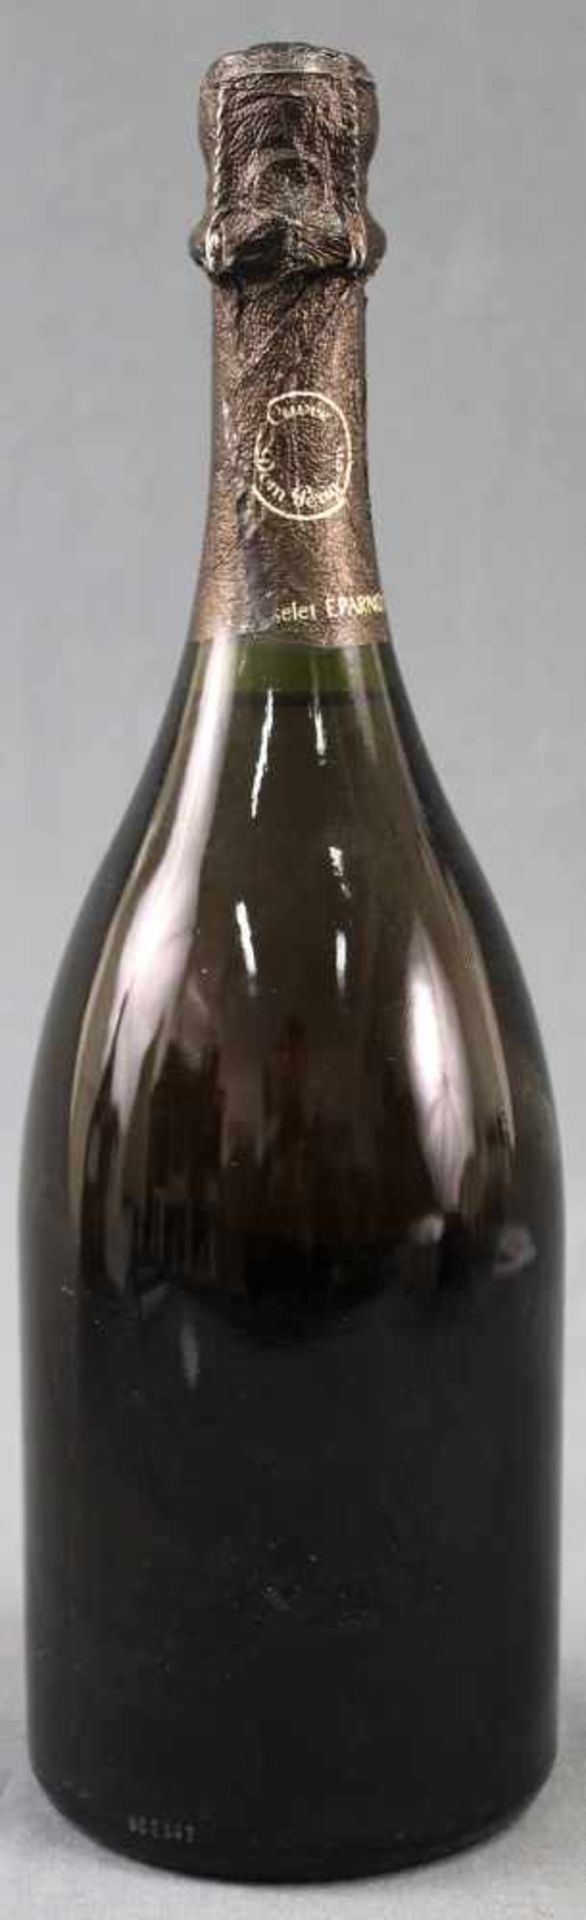 1983 Vintage. Cuvée Don Perignon. Champagne.1 ganze Flasche 12,5% vol. 75 cl. Moet et Chandon à - Bild 3 aus 9